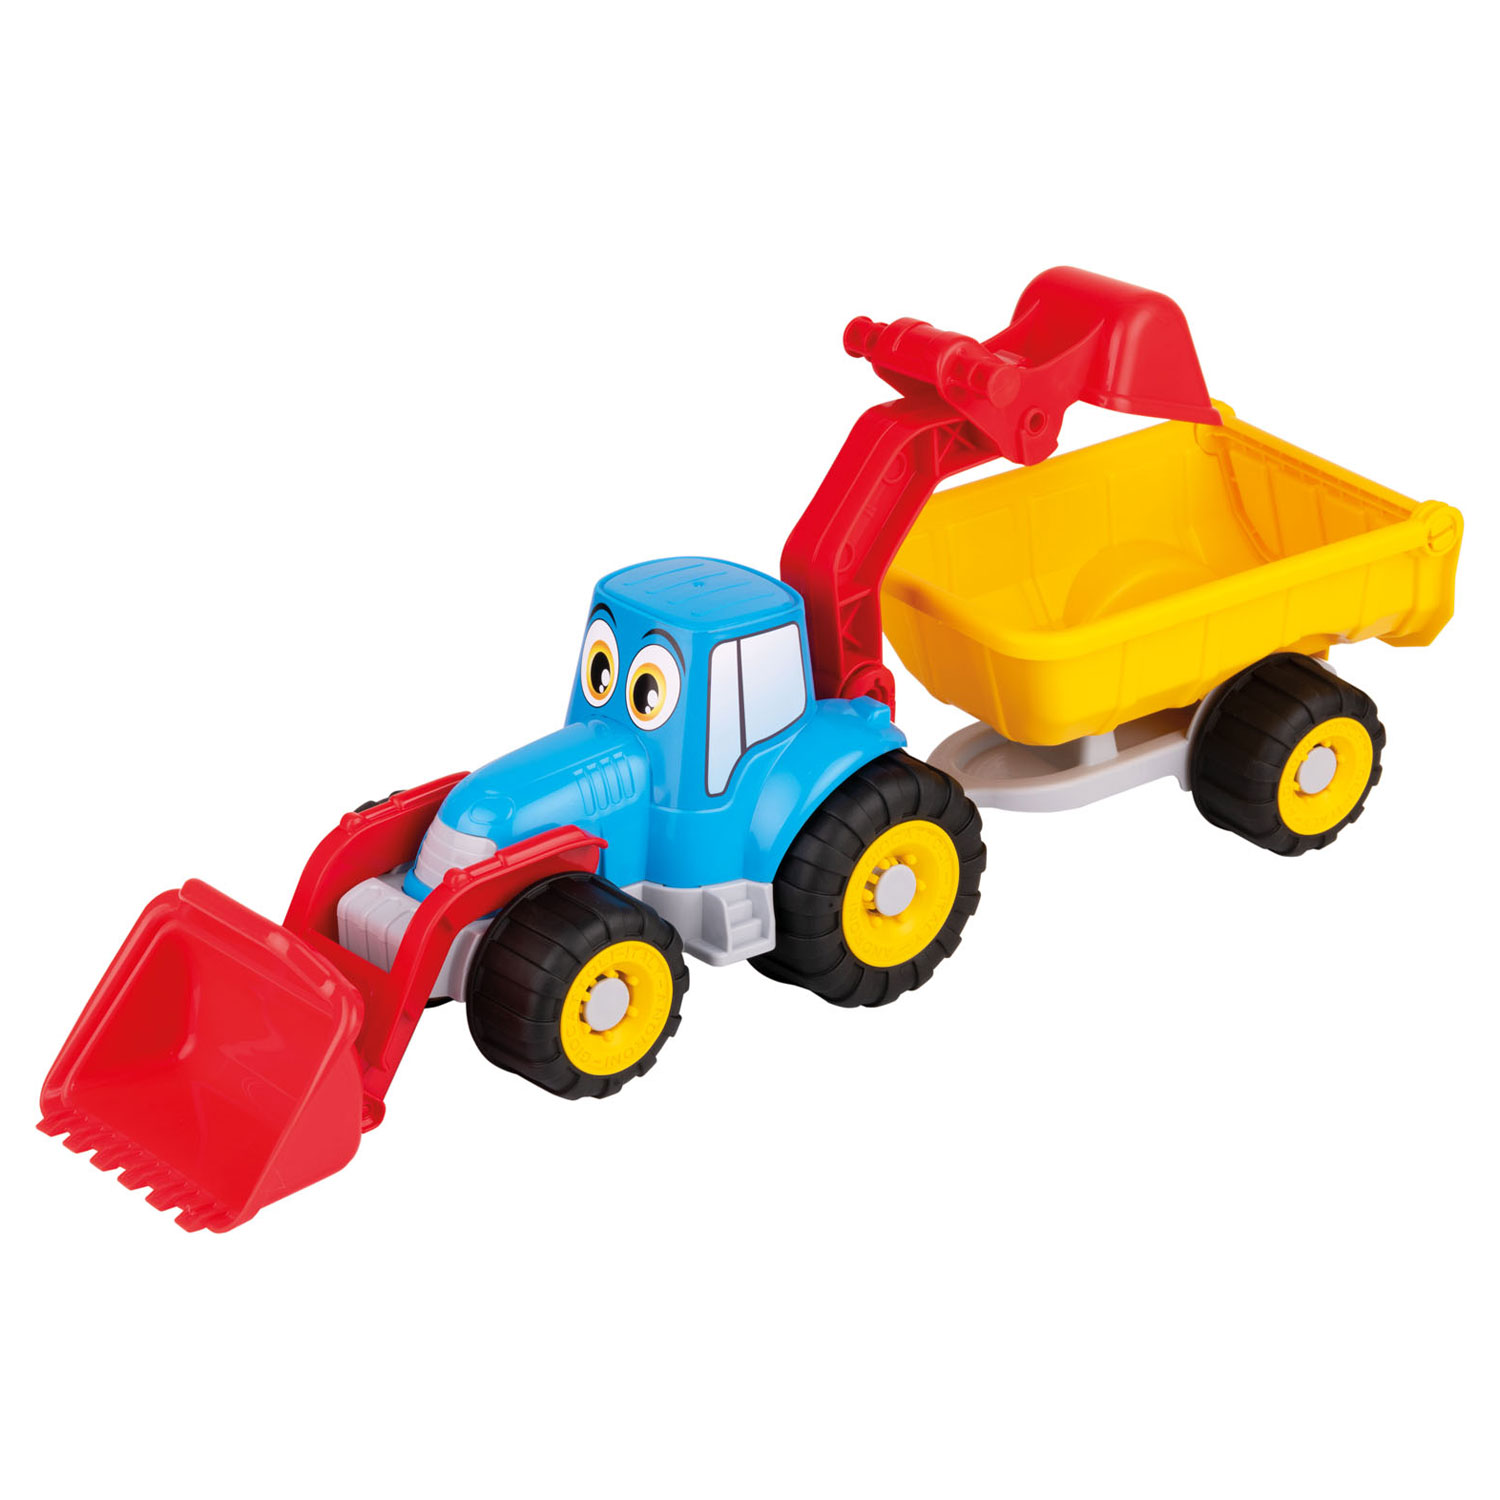 Aas band getrouwd Tractor met Wagen online kopen? | Lobbes Speelgoed